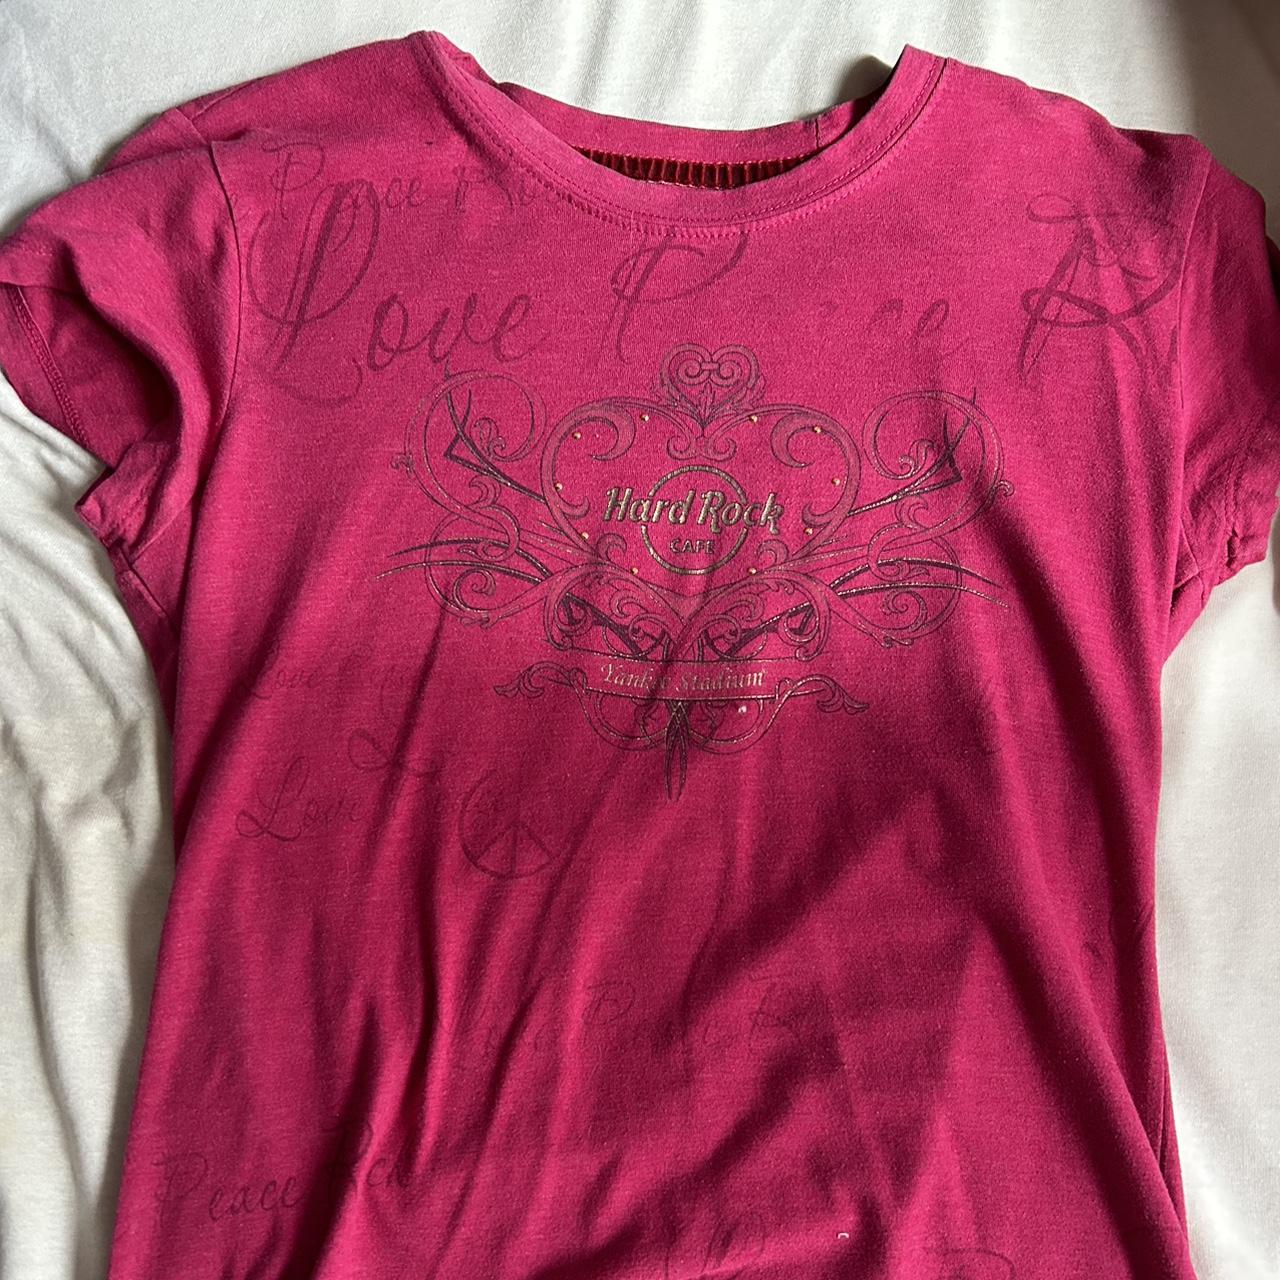 Hard Rock Cafe Women's Pink T-shirt | Depop